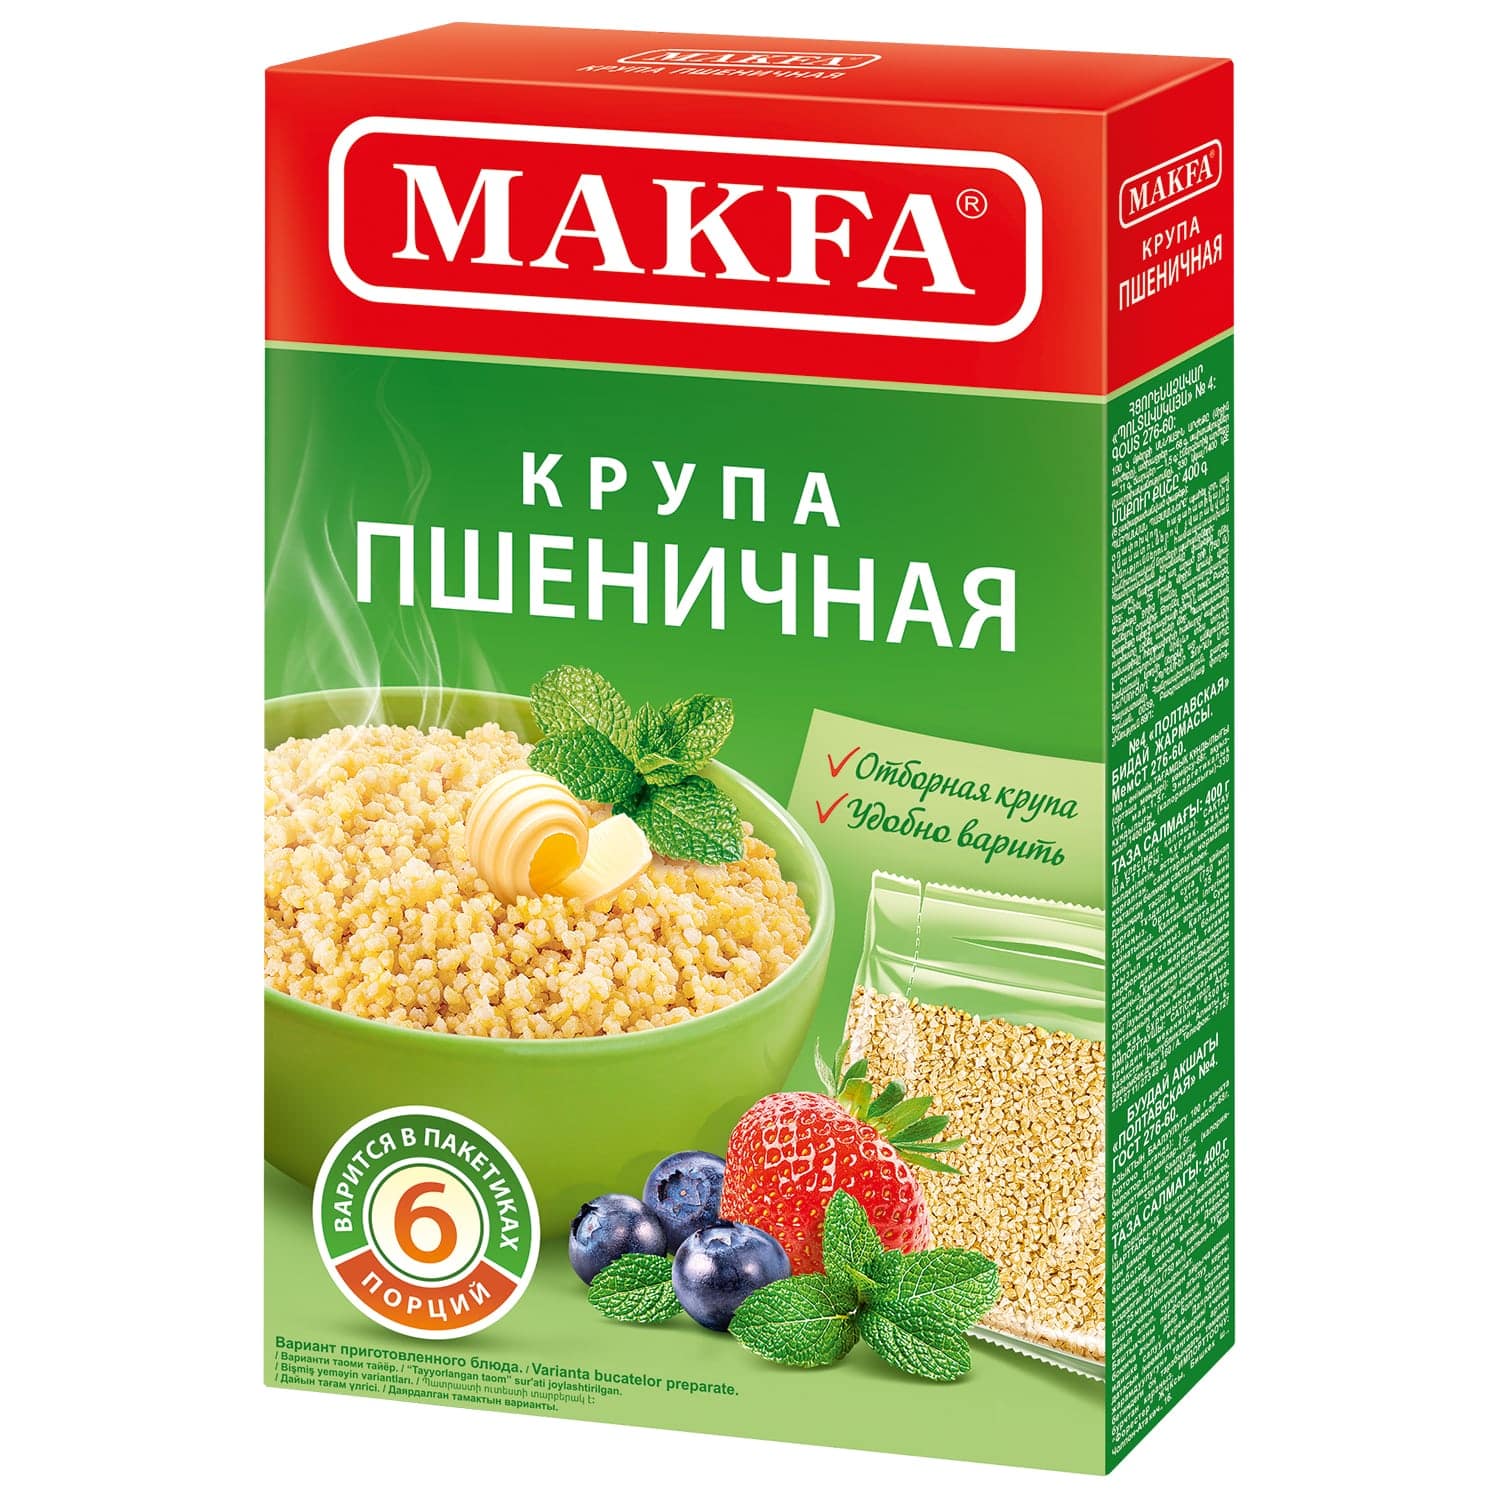 Крупа пшеничная MAKFA в пакетиках для варки